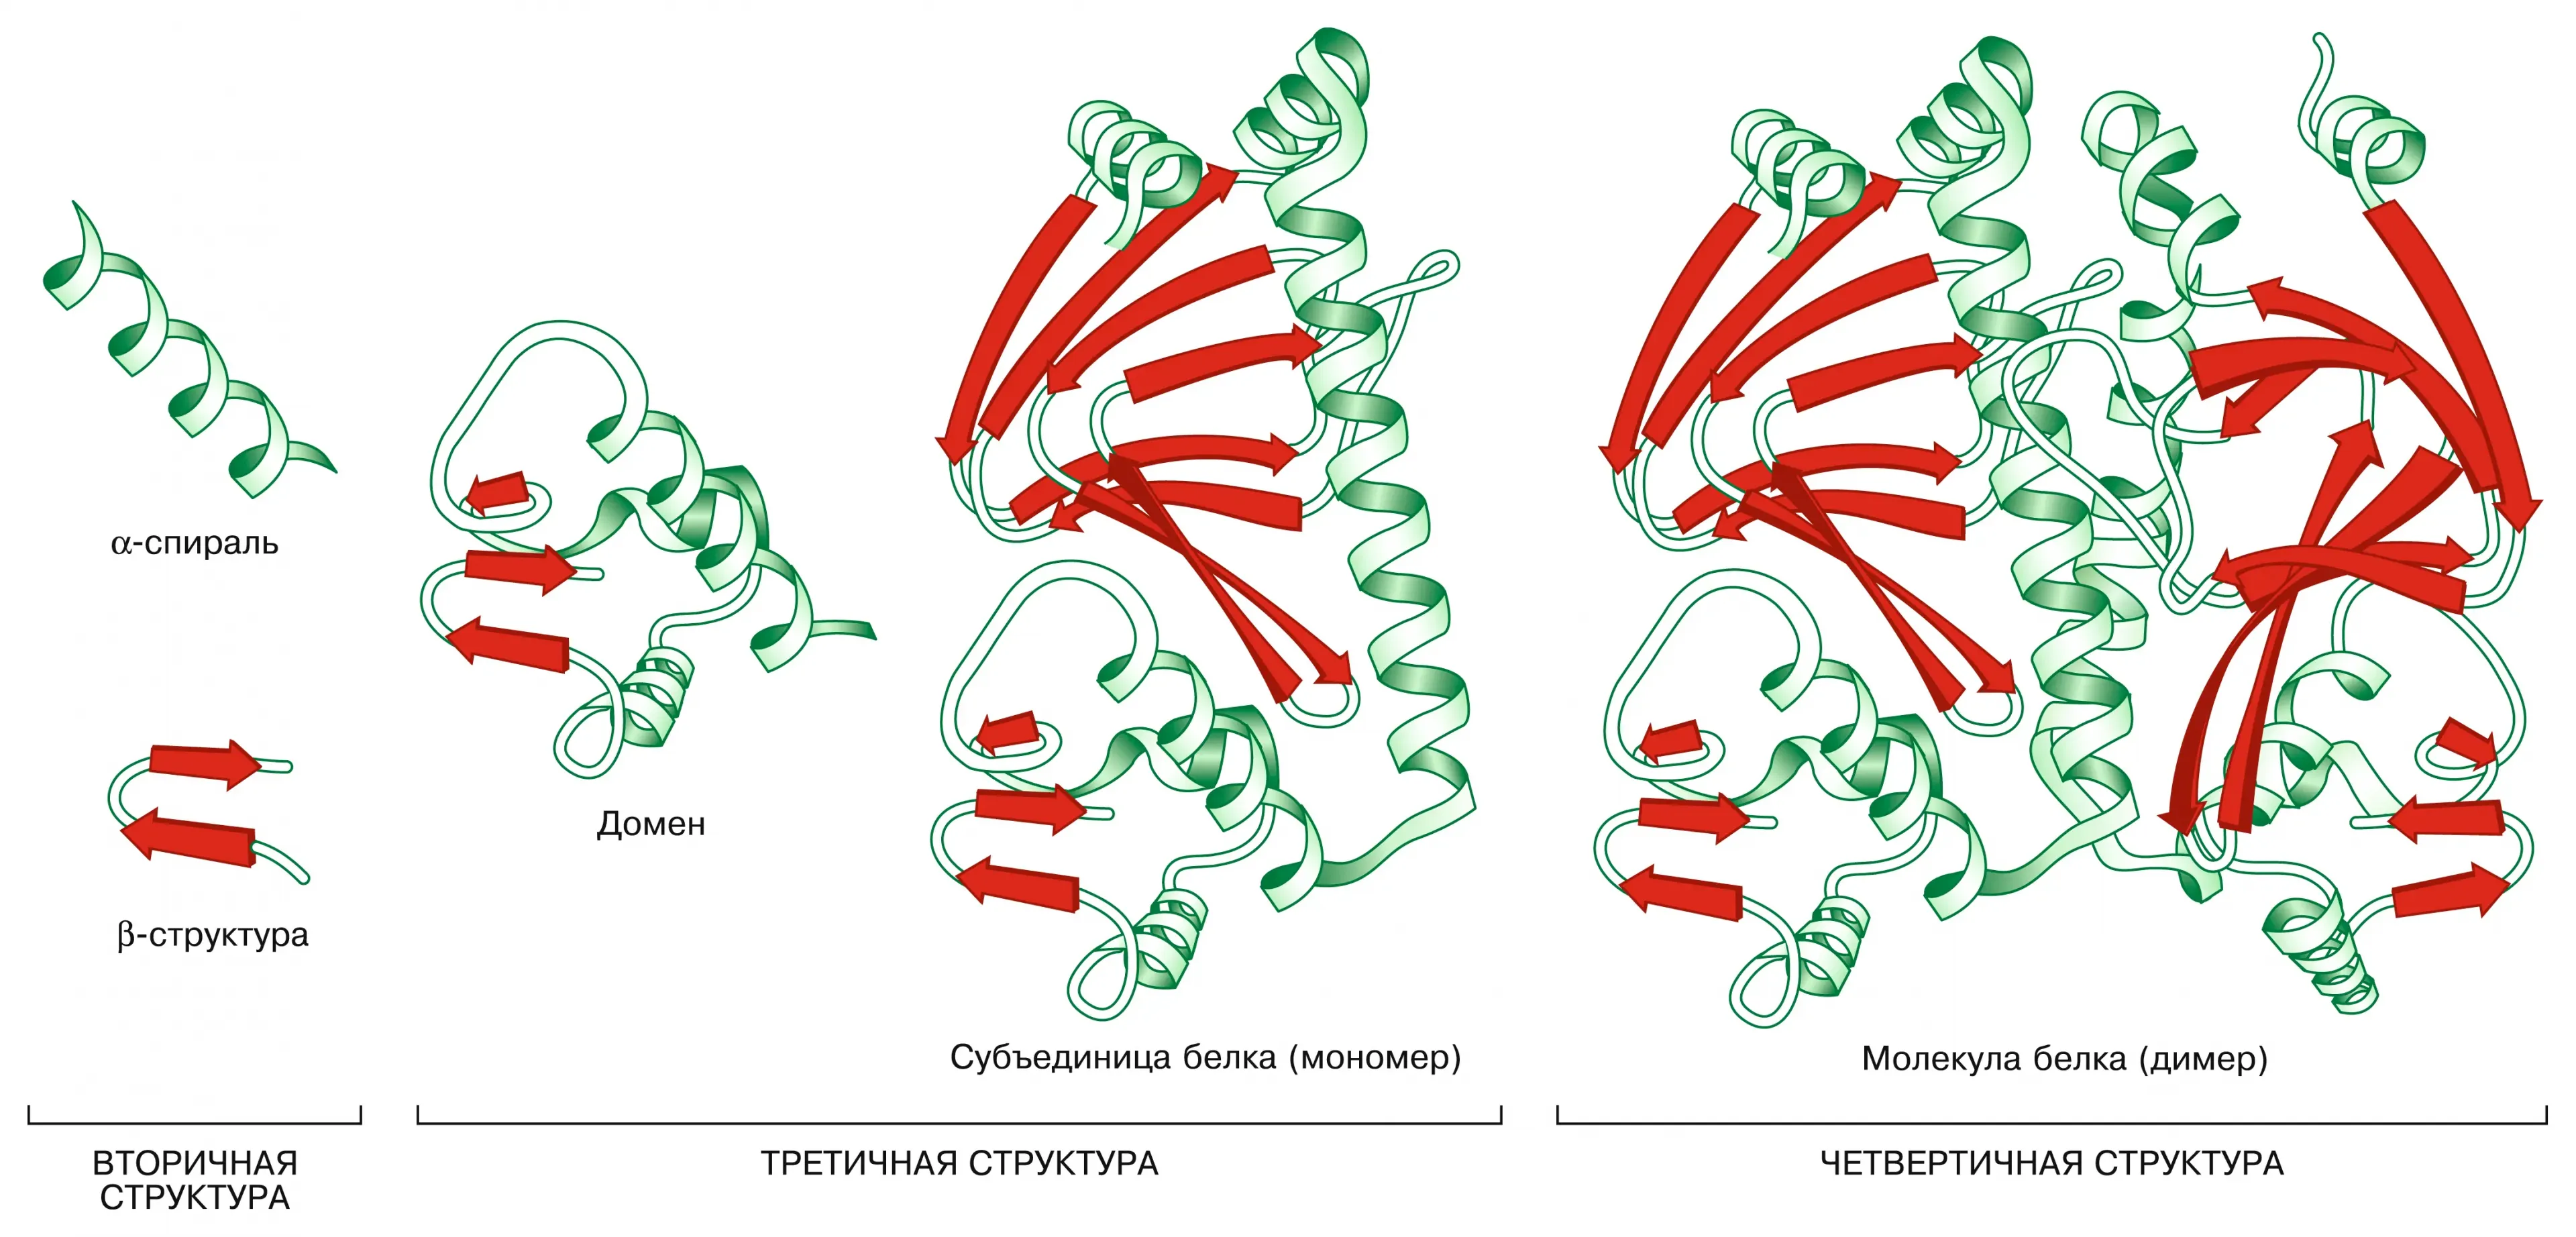 Доменный белок. Белок первичная структура вторичная третичная. Доменная структура белков. Структура белка схема. Пространственная организация белков.